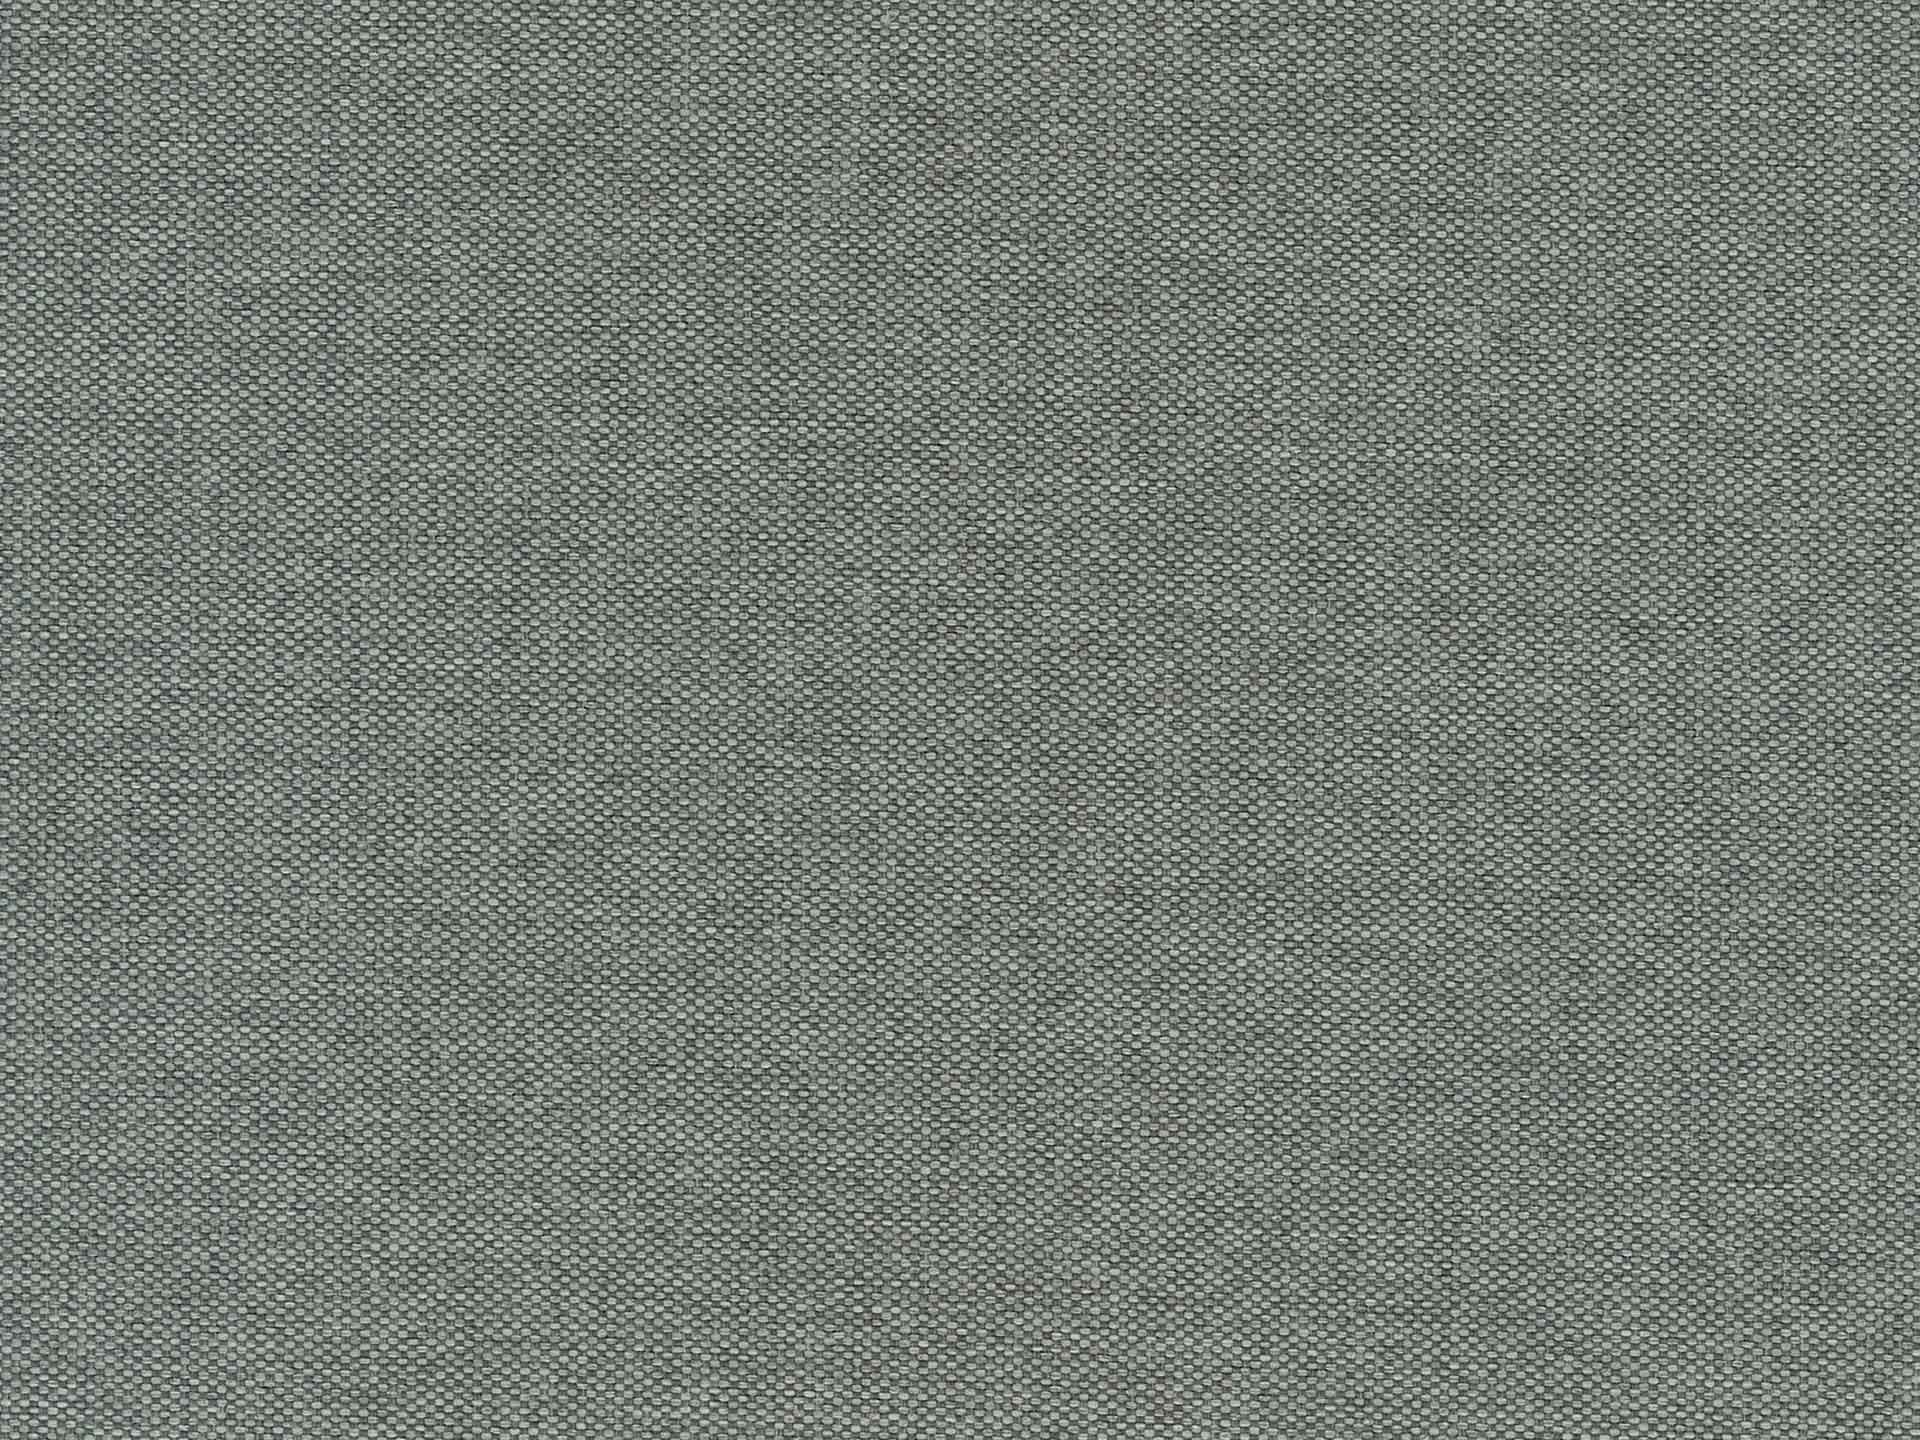 Textilbezug Grau / Bombay 06